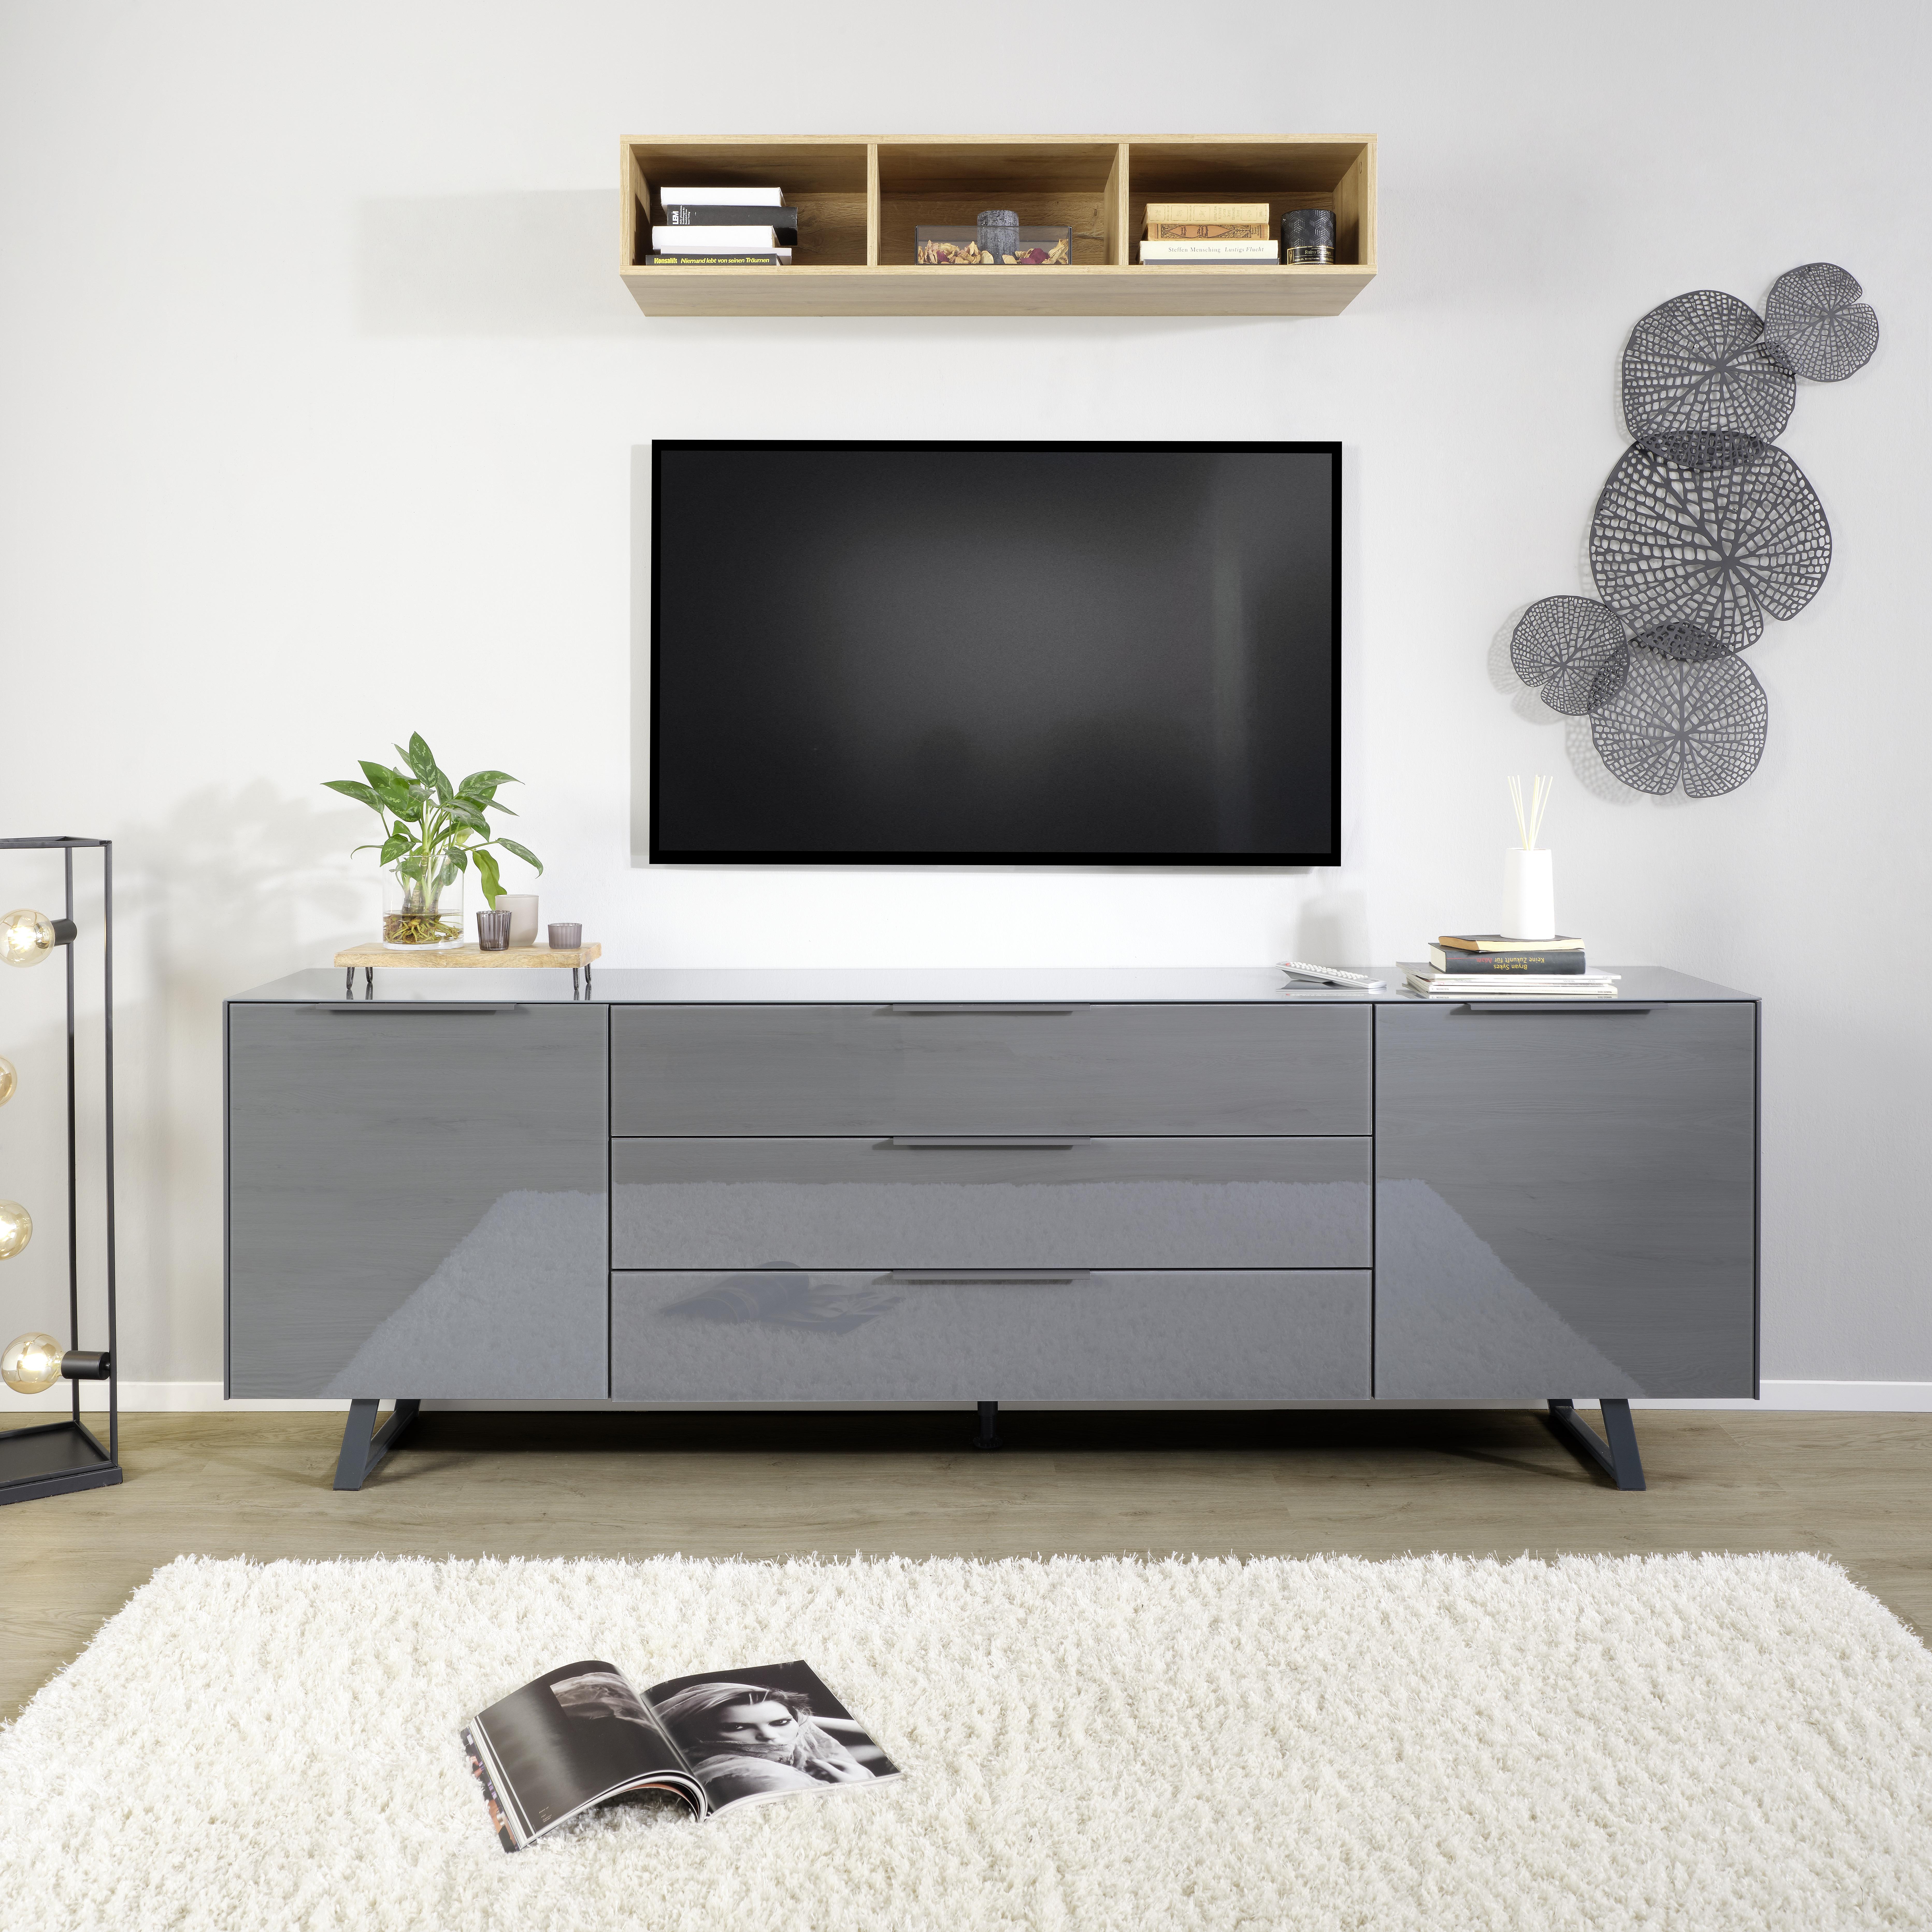 Tv Díl Max Box - barvy stříbra/antracitová, Moderní, kov/kompozitní dřevo (235/63/45cm) - Premium Living